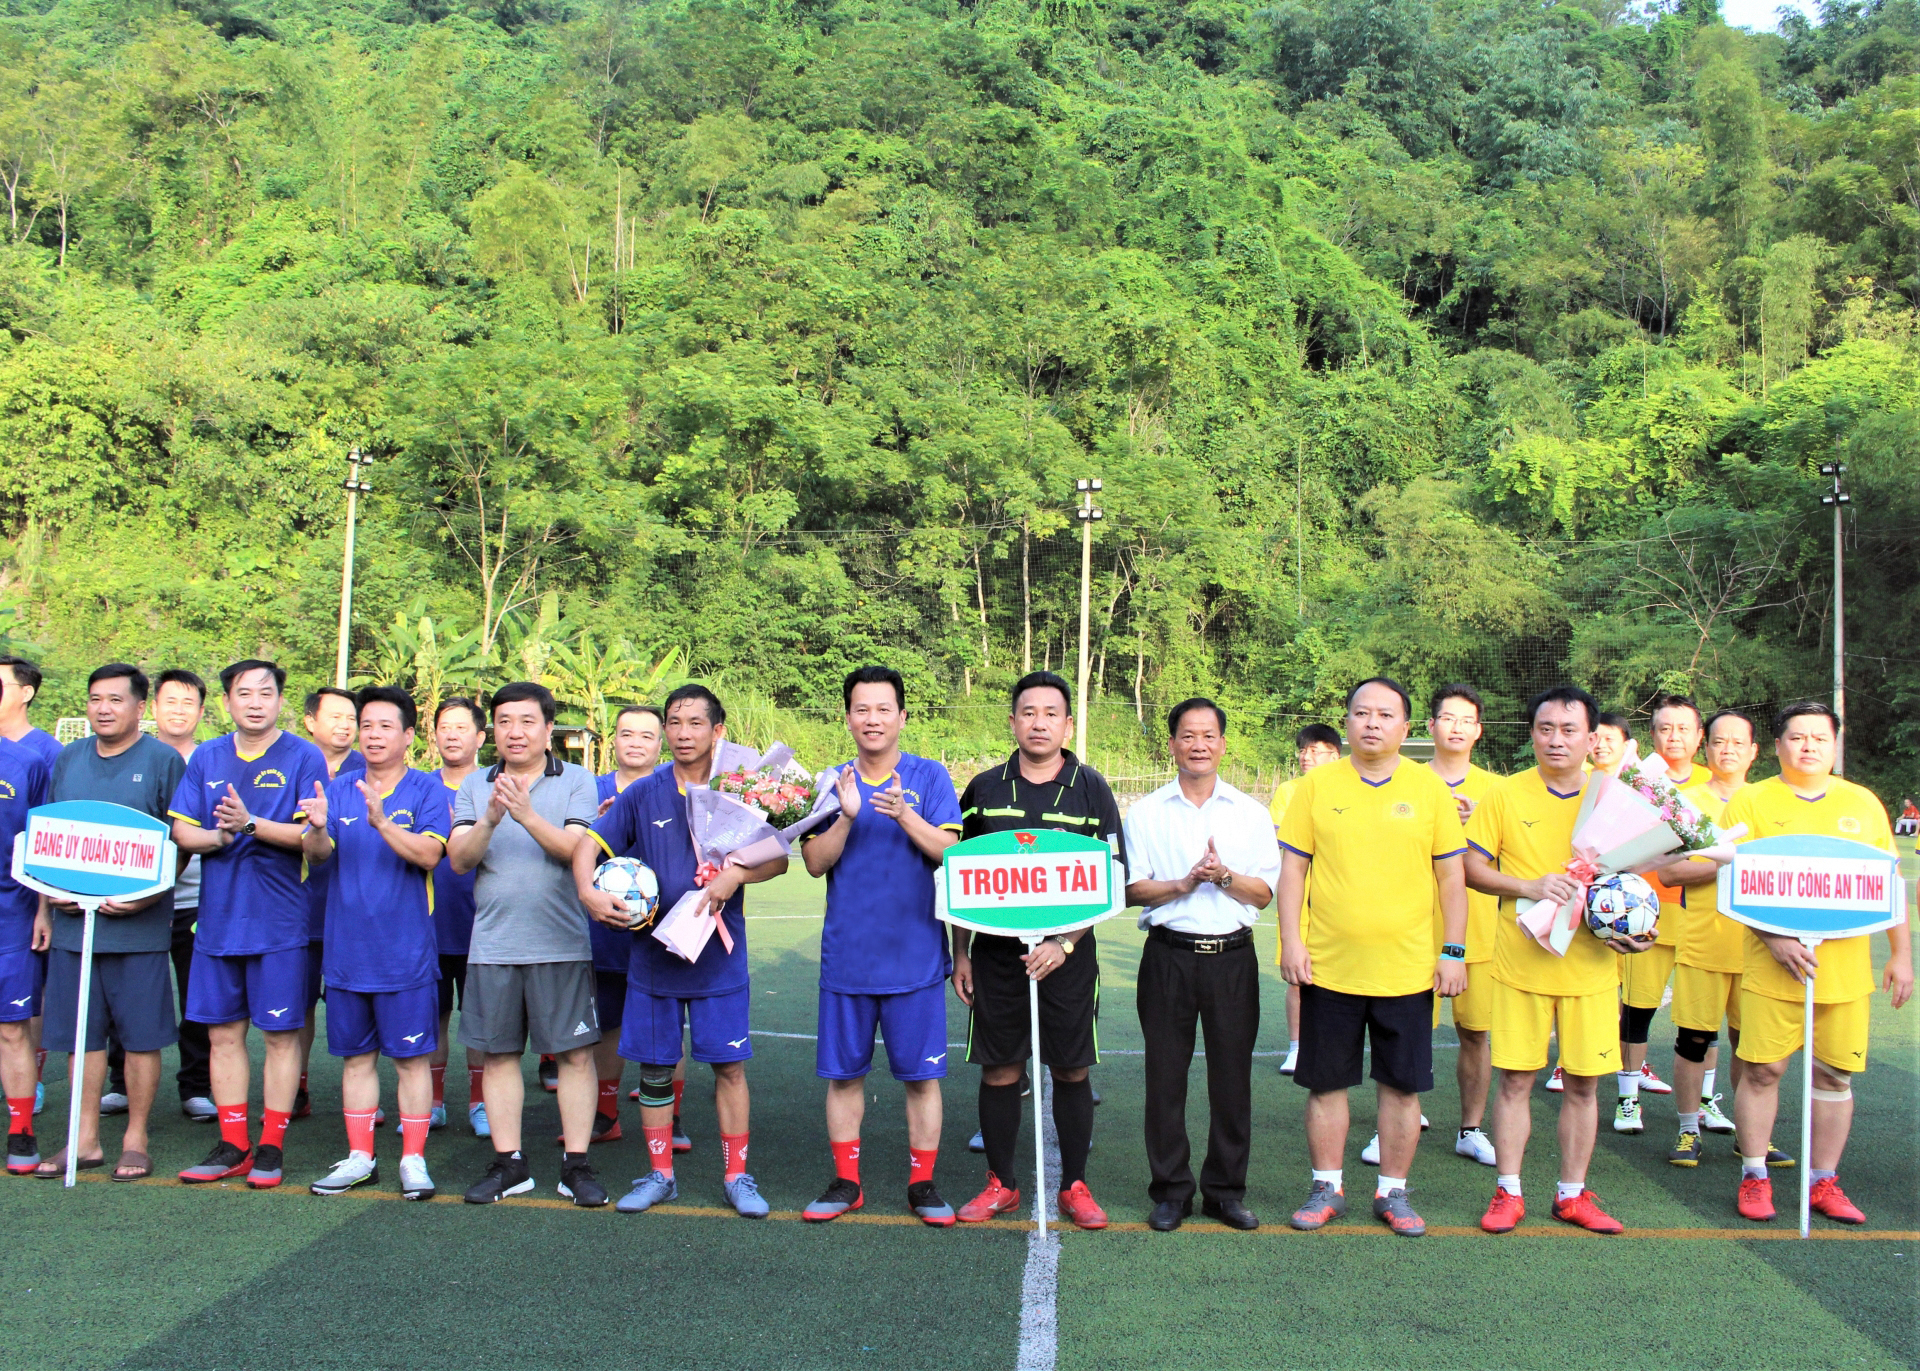 BTC tặng hoa cho các đội tham gia giao lưu bóng đá nam chào mừng 77 năm Cách mạng Tháng Tám và Quốc khánh 2.9